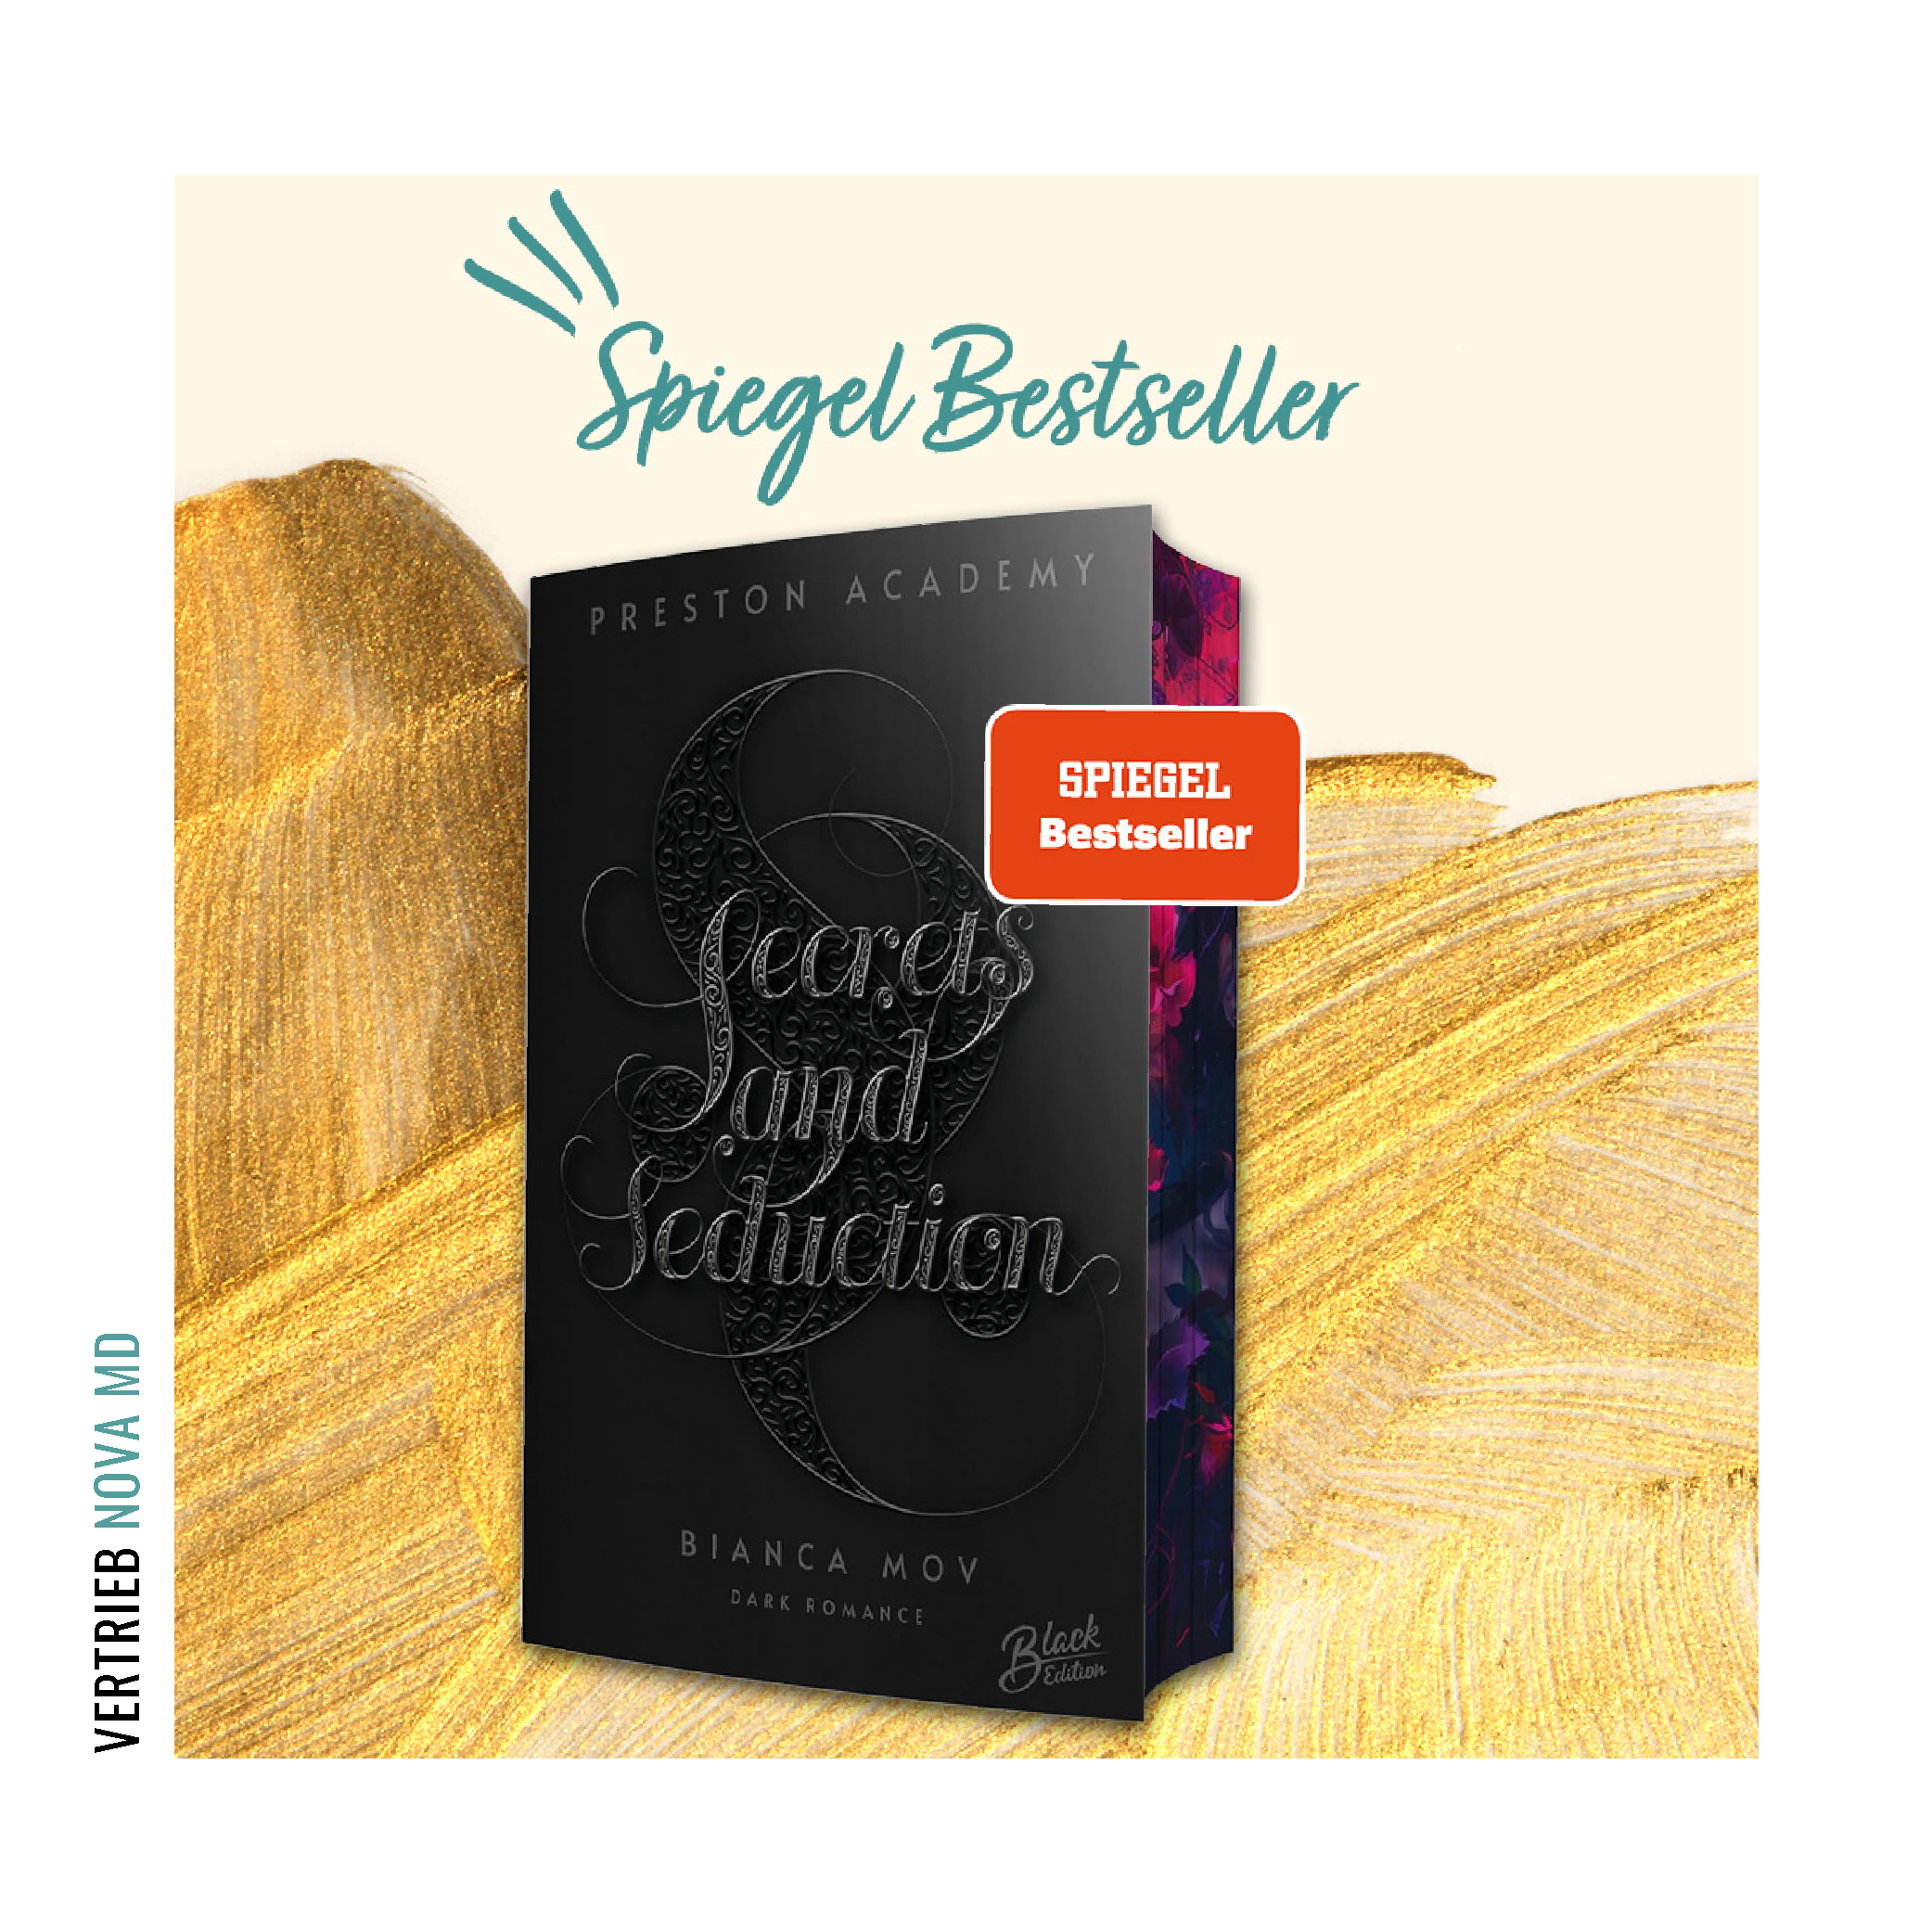 Bekanntgabe SPIEGEL-Bestseller für "Secrets and Seduction" von Bianca Mov mit Abbildung des Buches vor goldenem Hintergrund